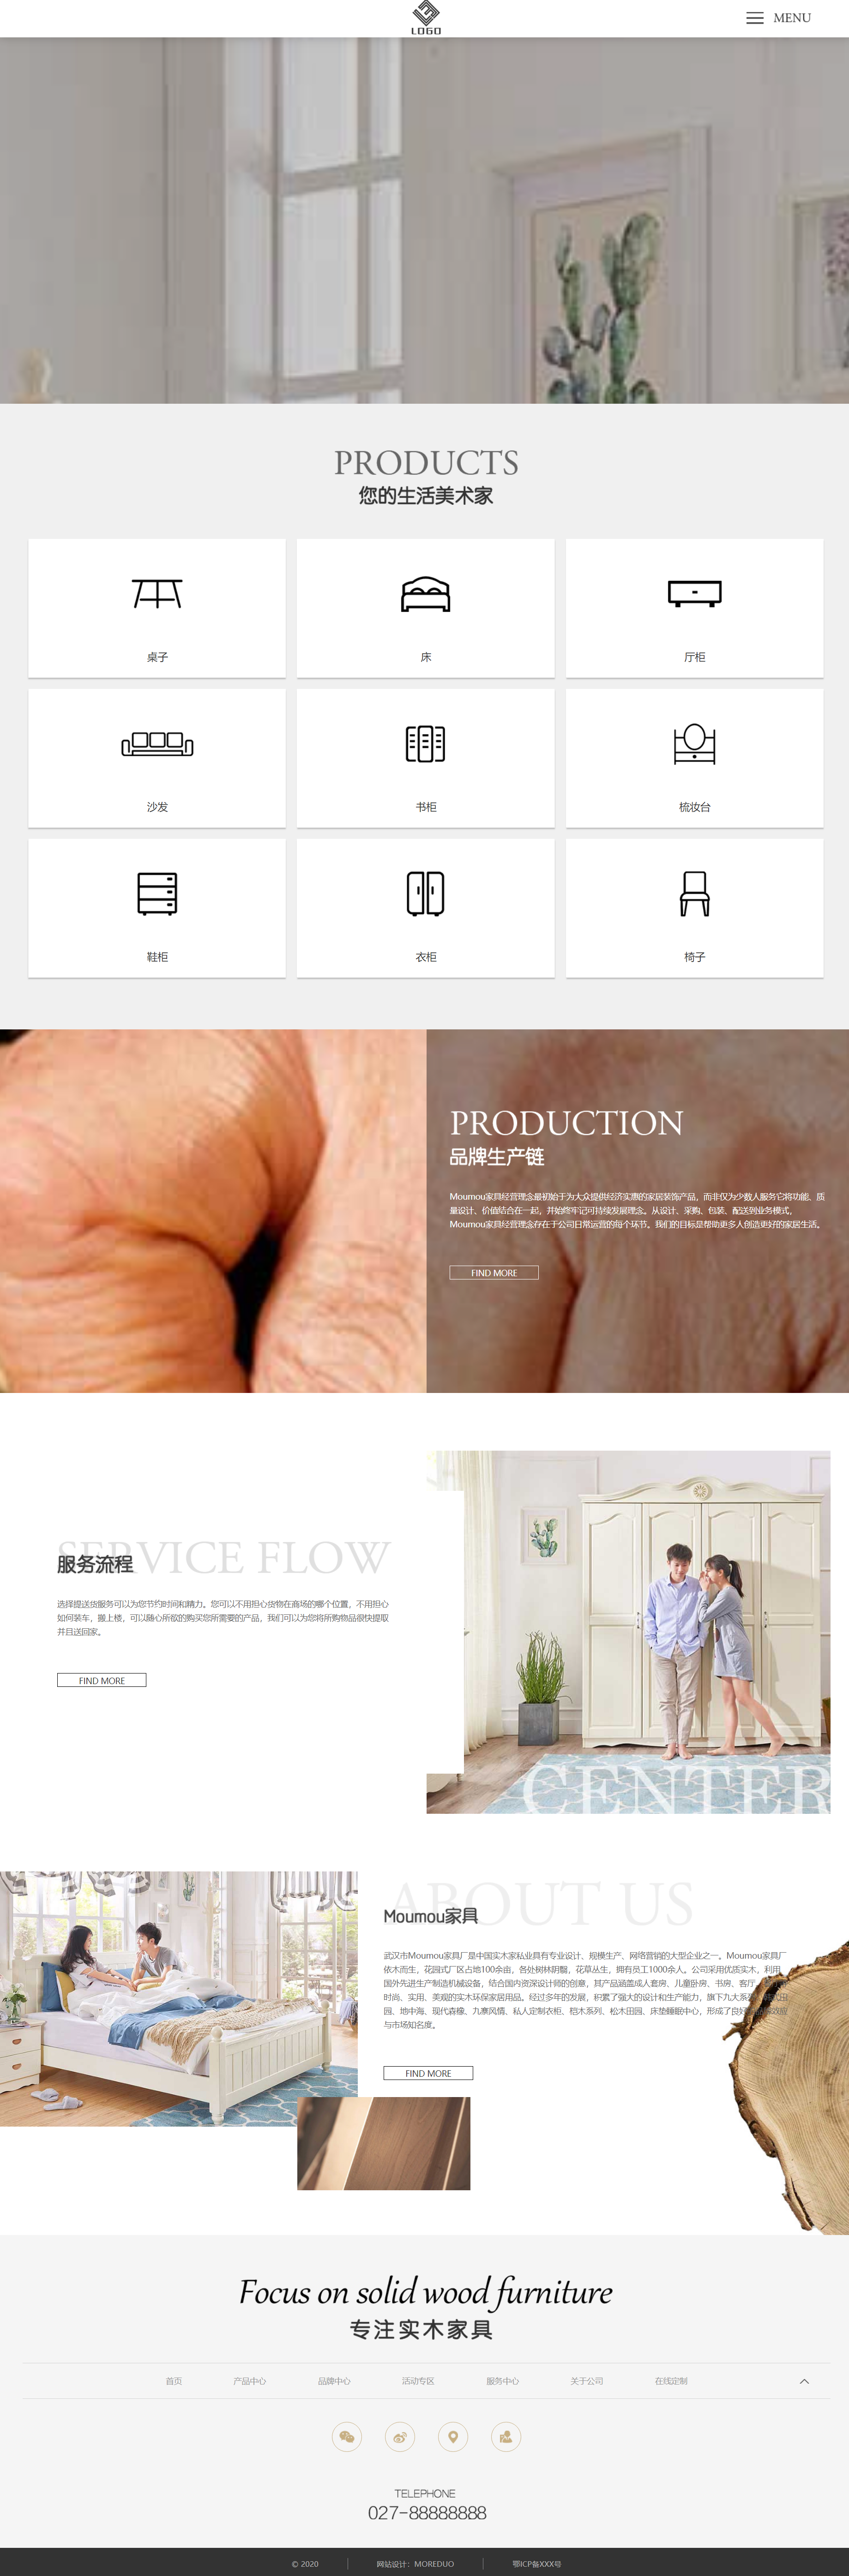 棕色简洁风格响应式家具装饰公司企业网站模板